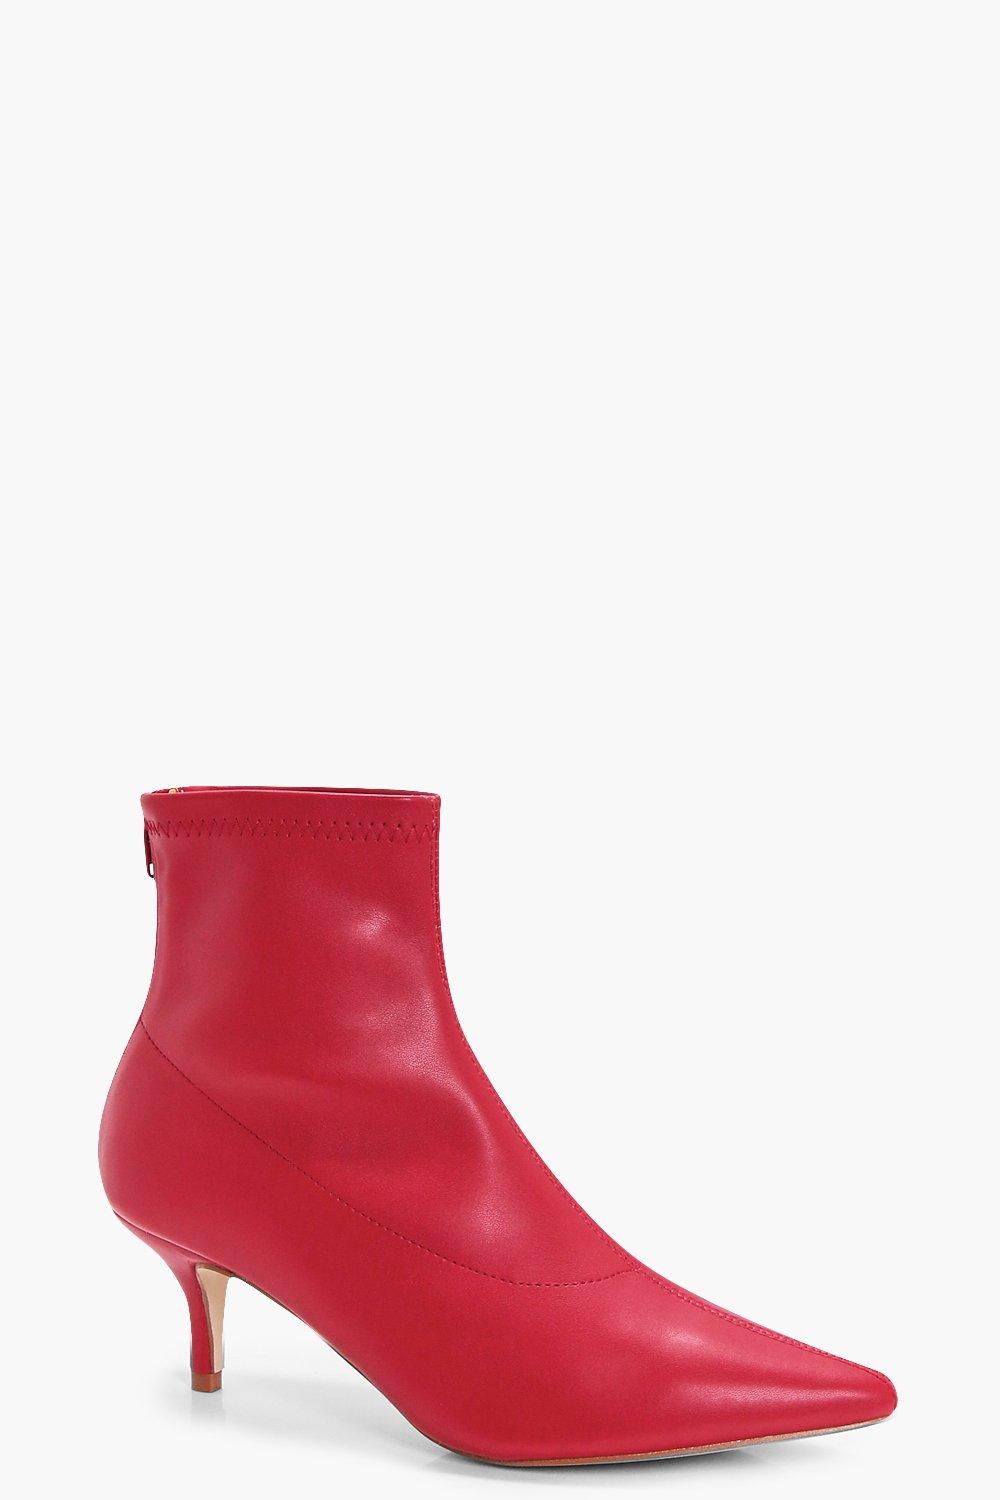 red kitten heel boots